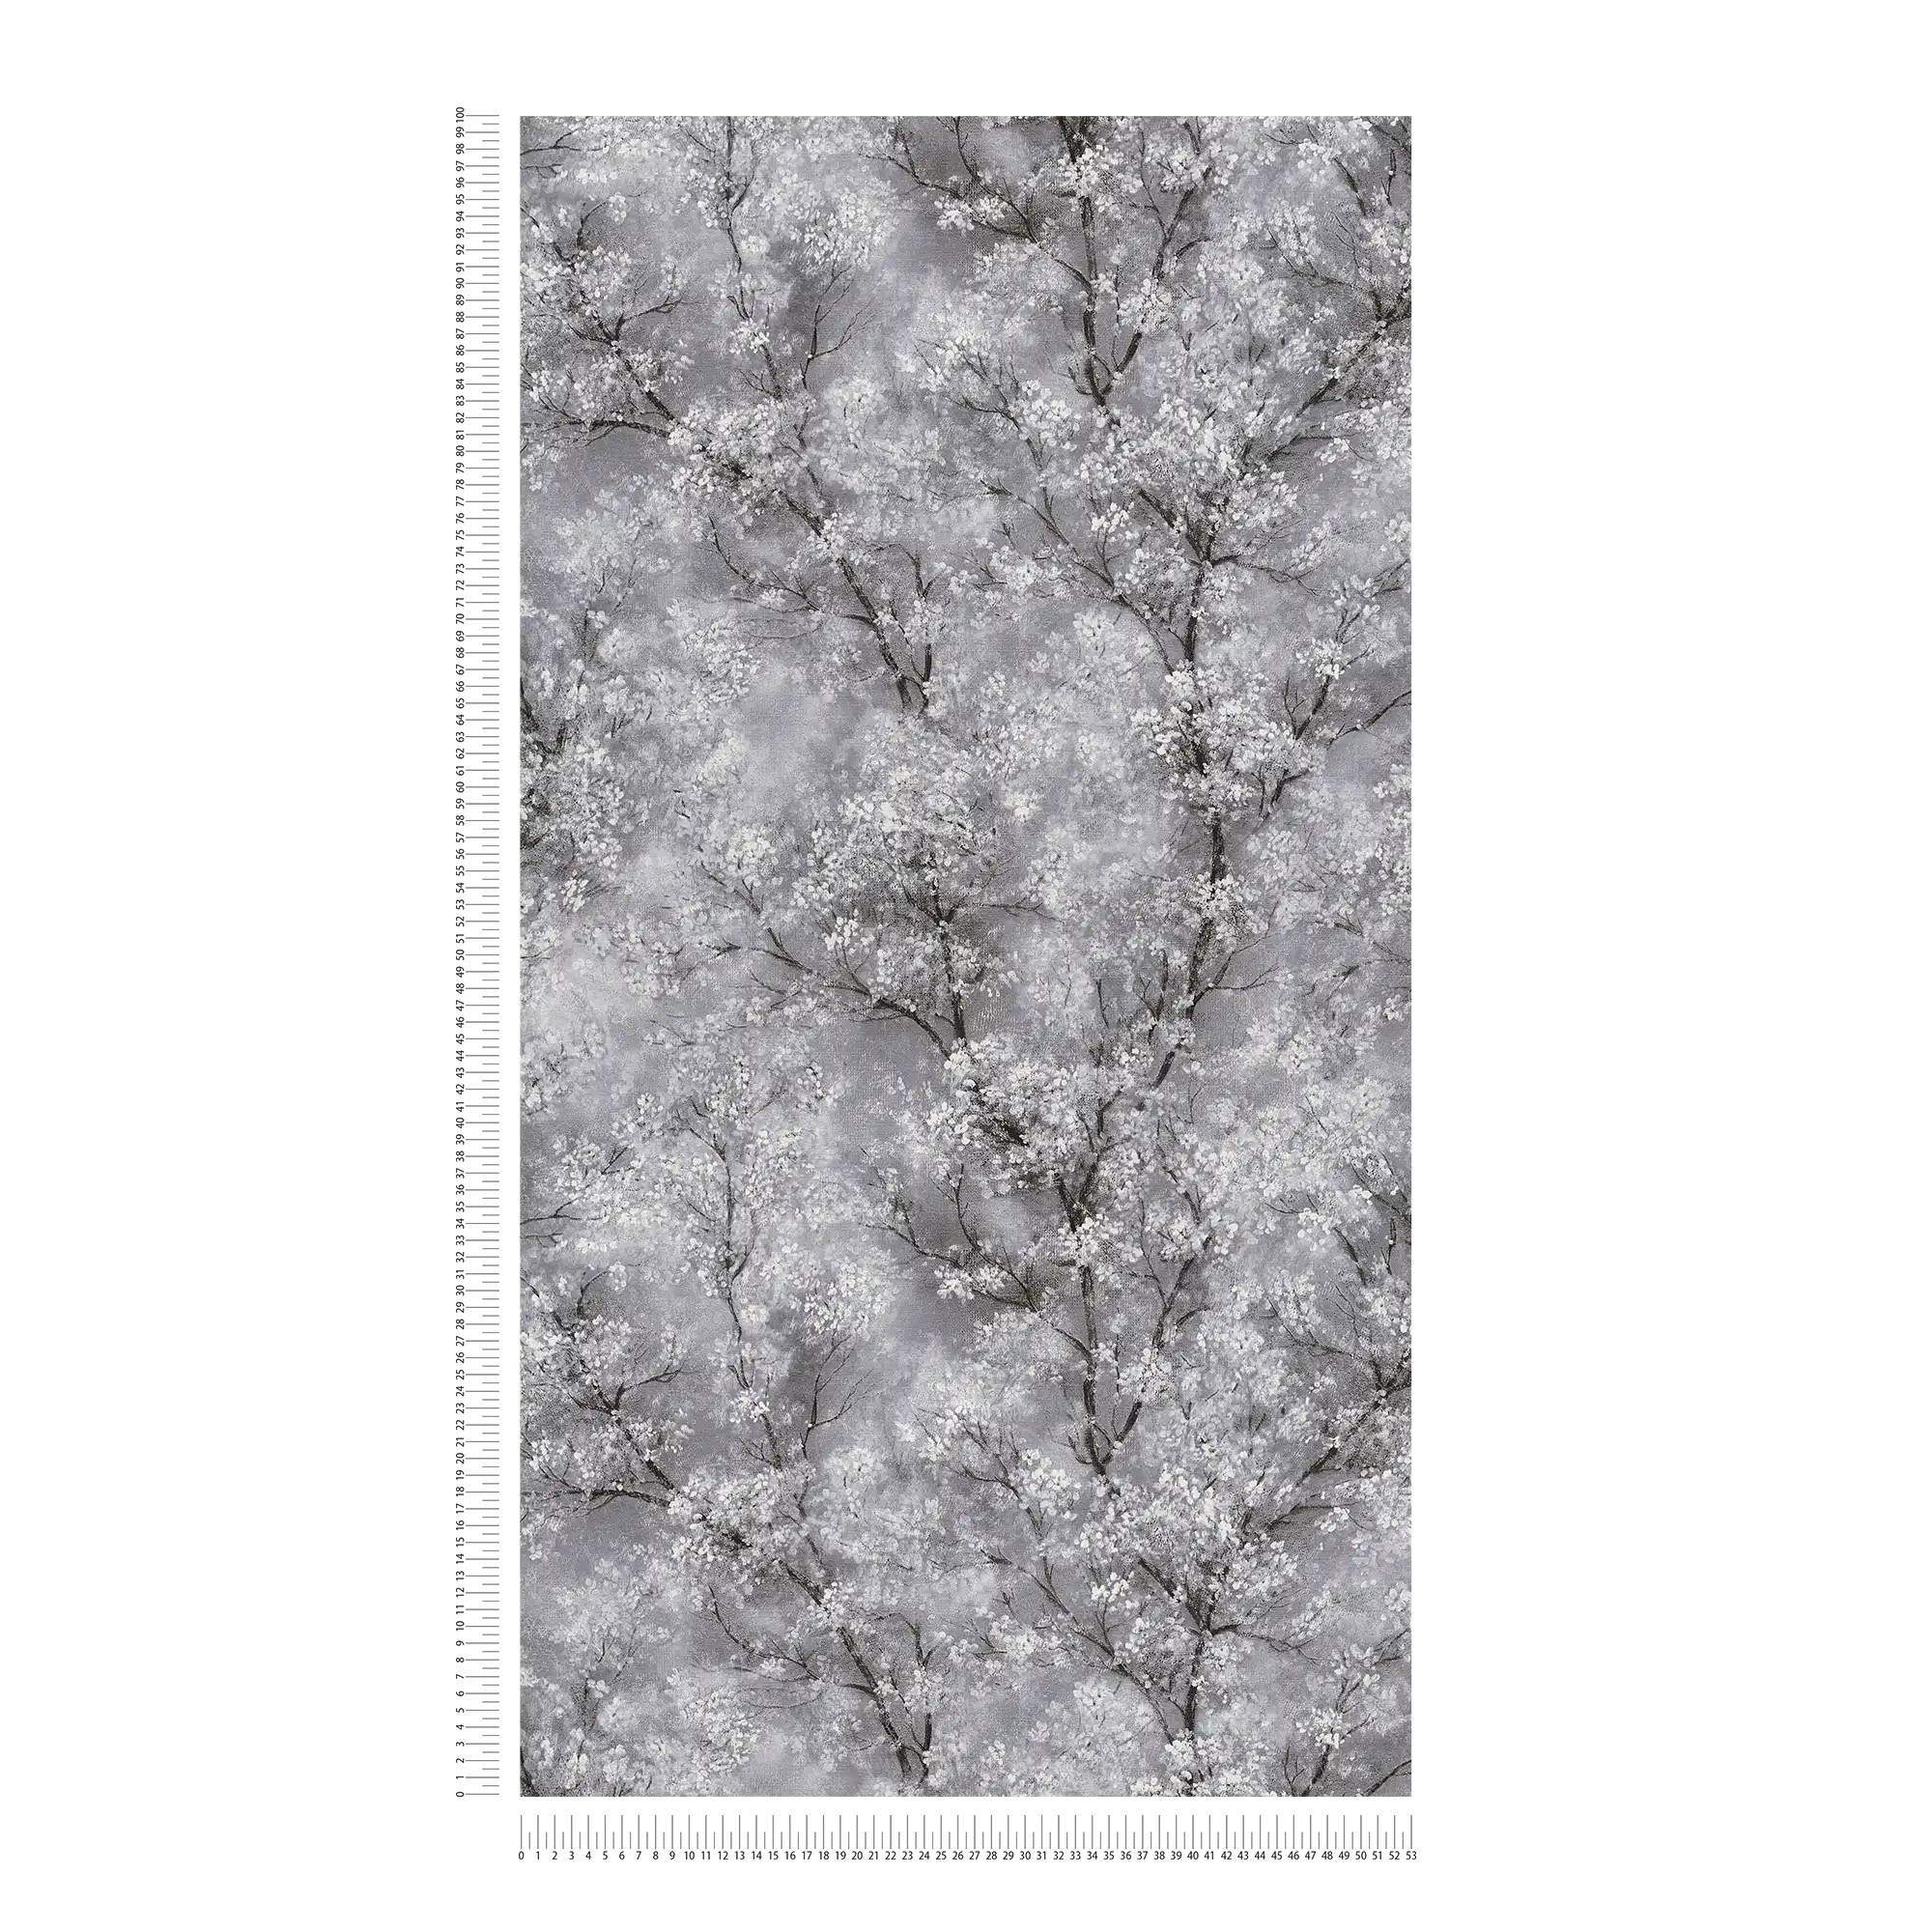             Tapete Kirschblüten Glitzer-Effekt – Grau, Schwarz, Weiß
        